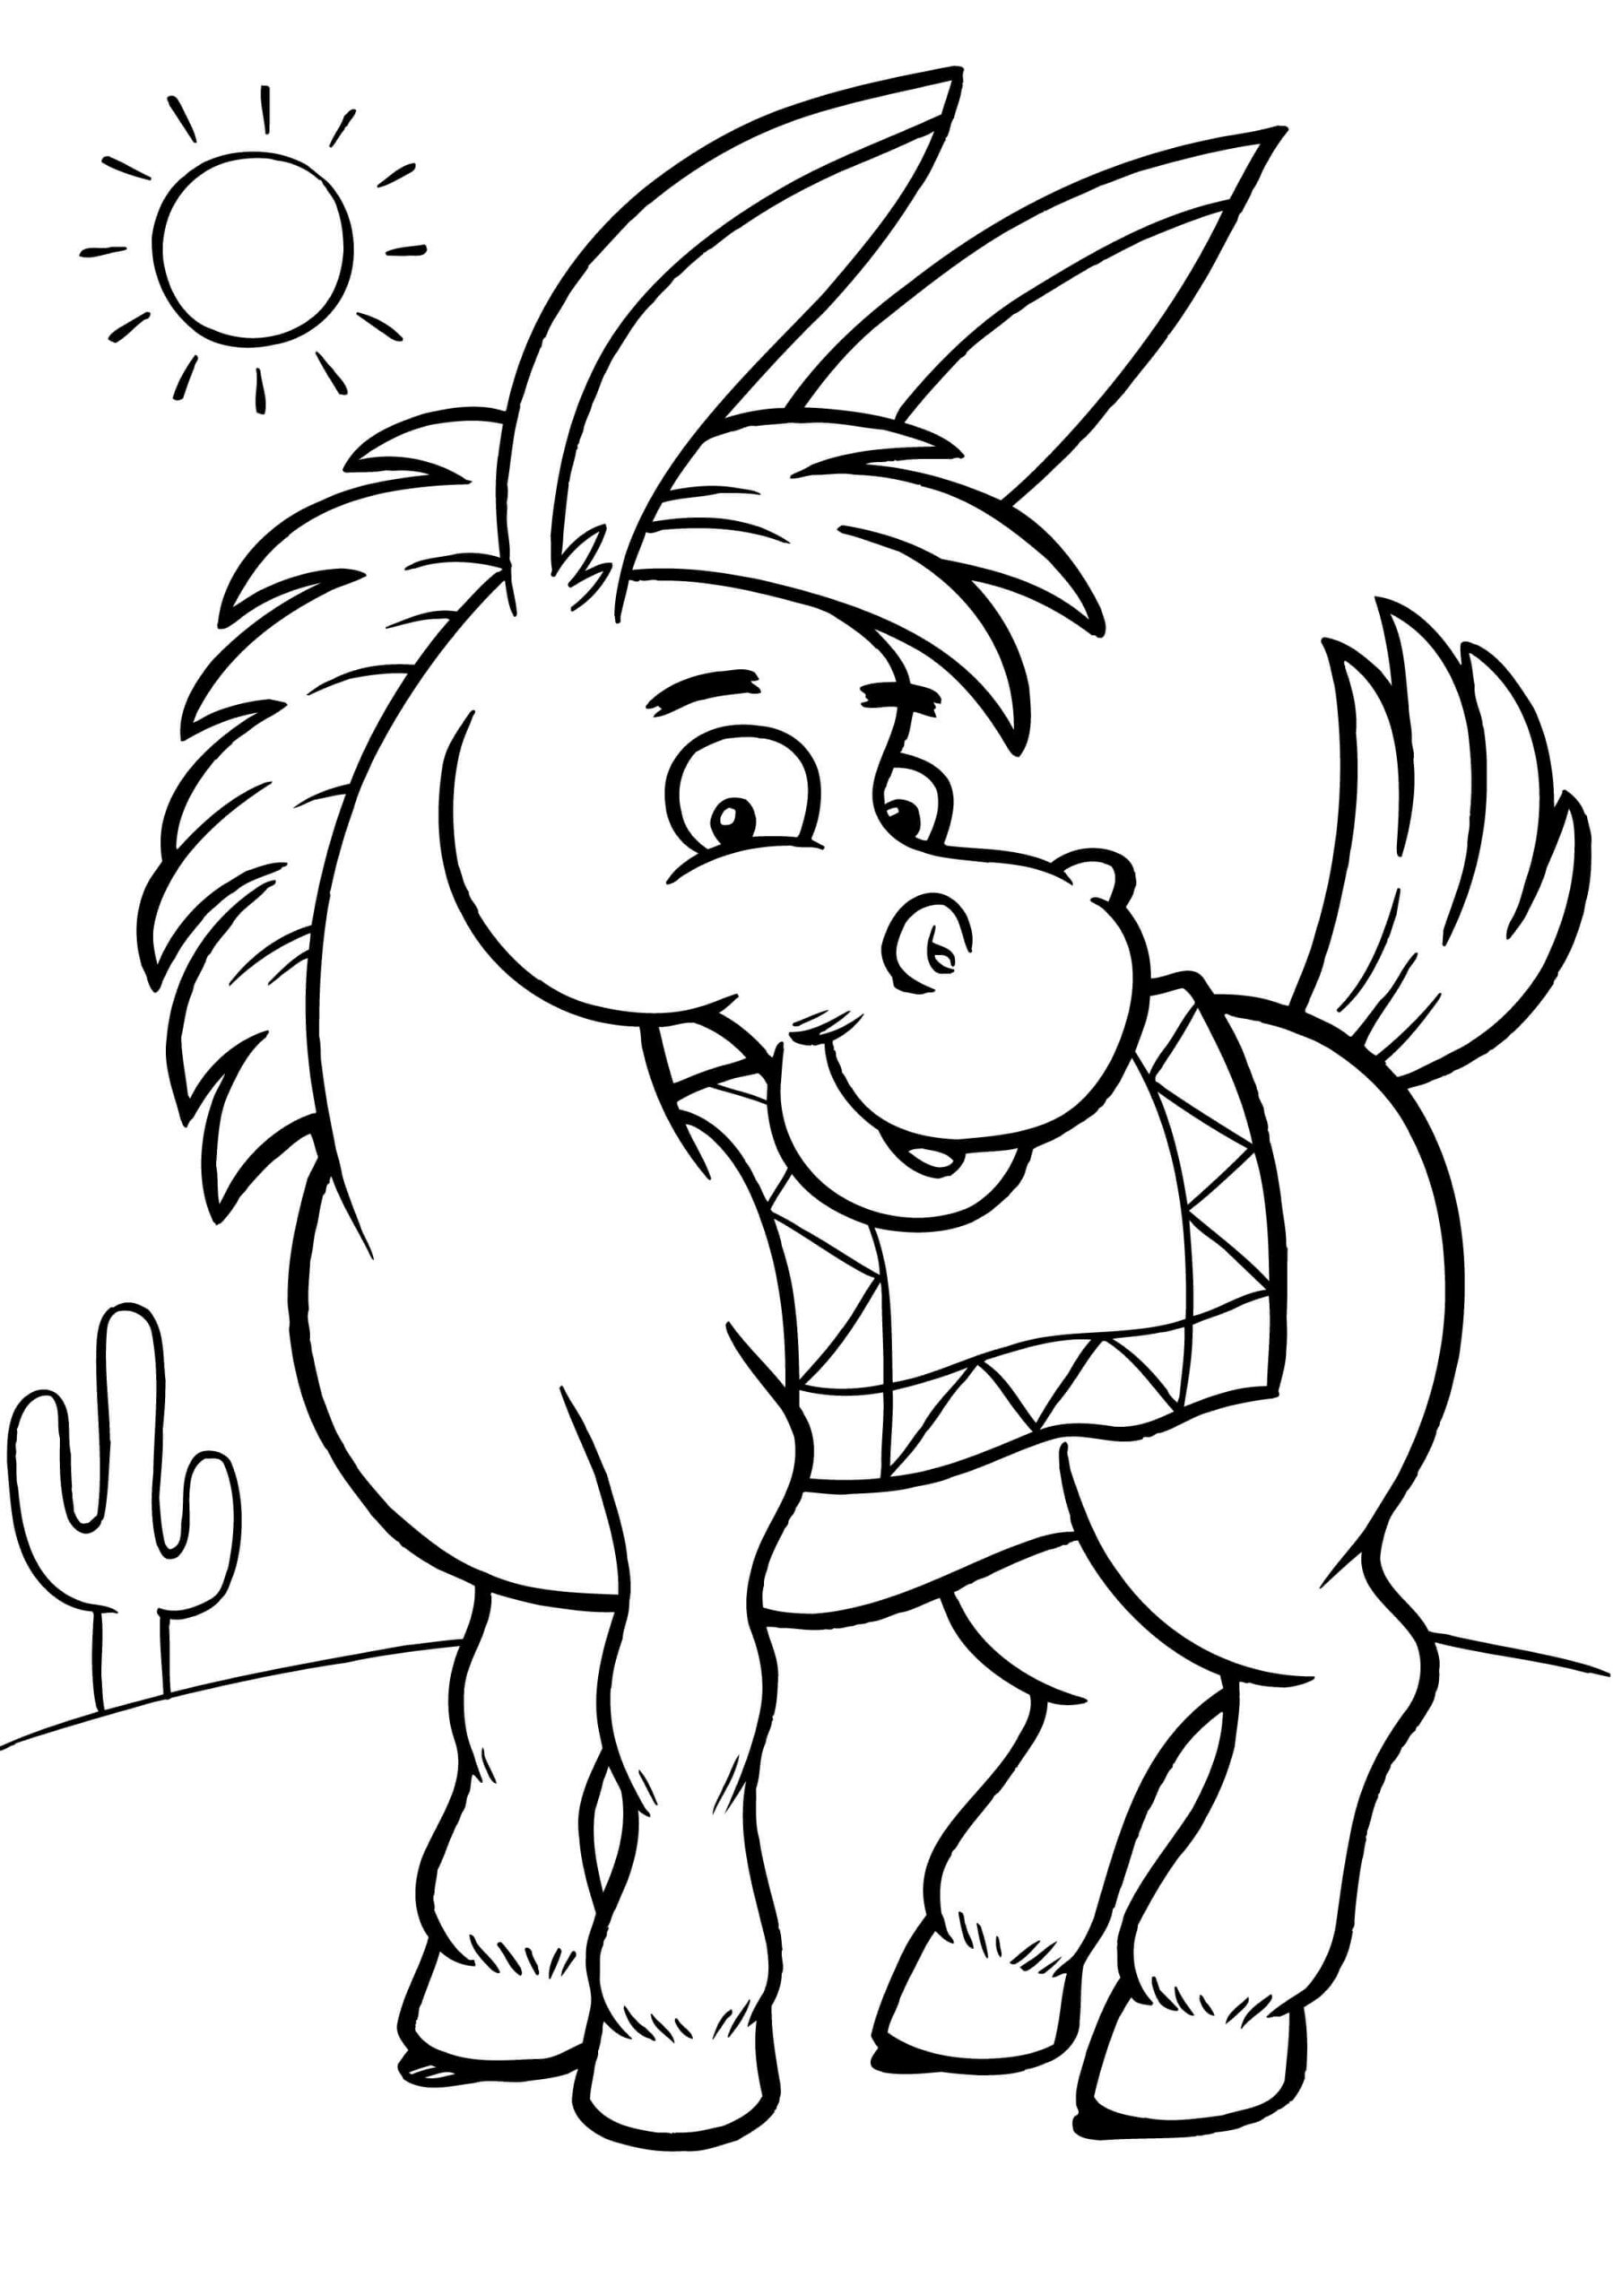 burro-de-dibujos-animados-sonriente-para-colorear-imprimir-e-dibujar-coloringonly-com